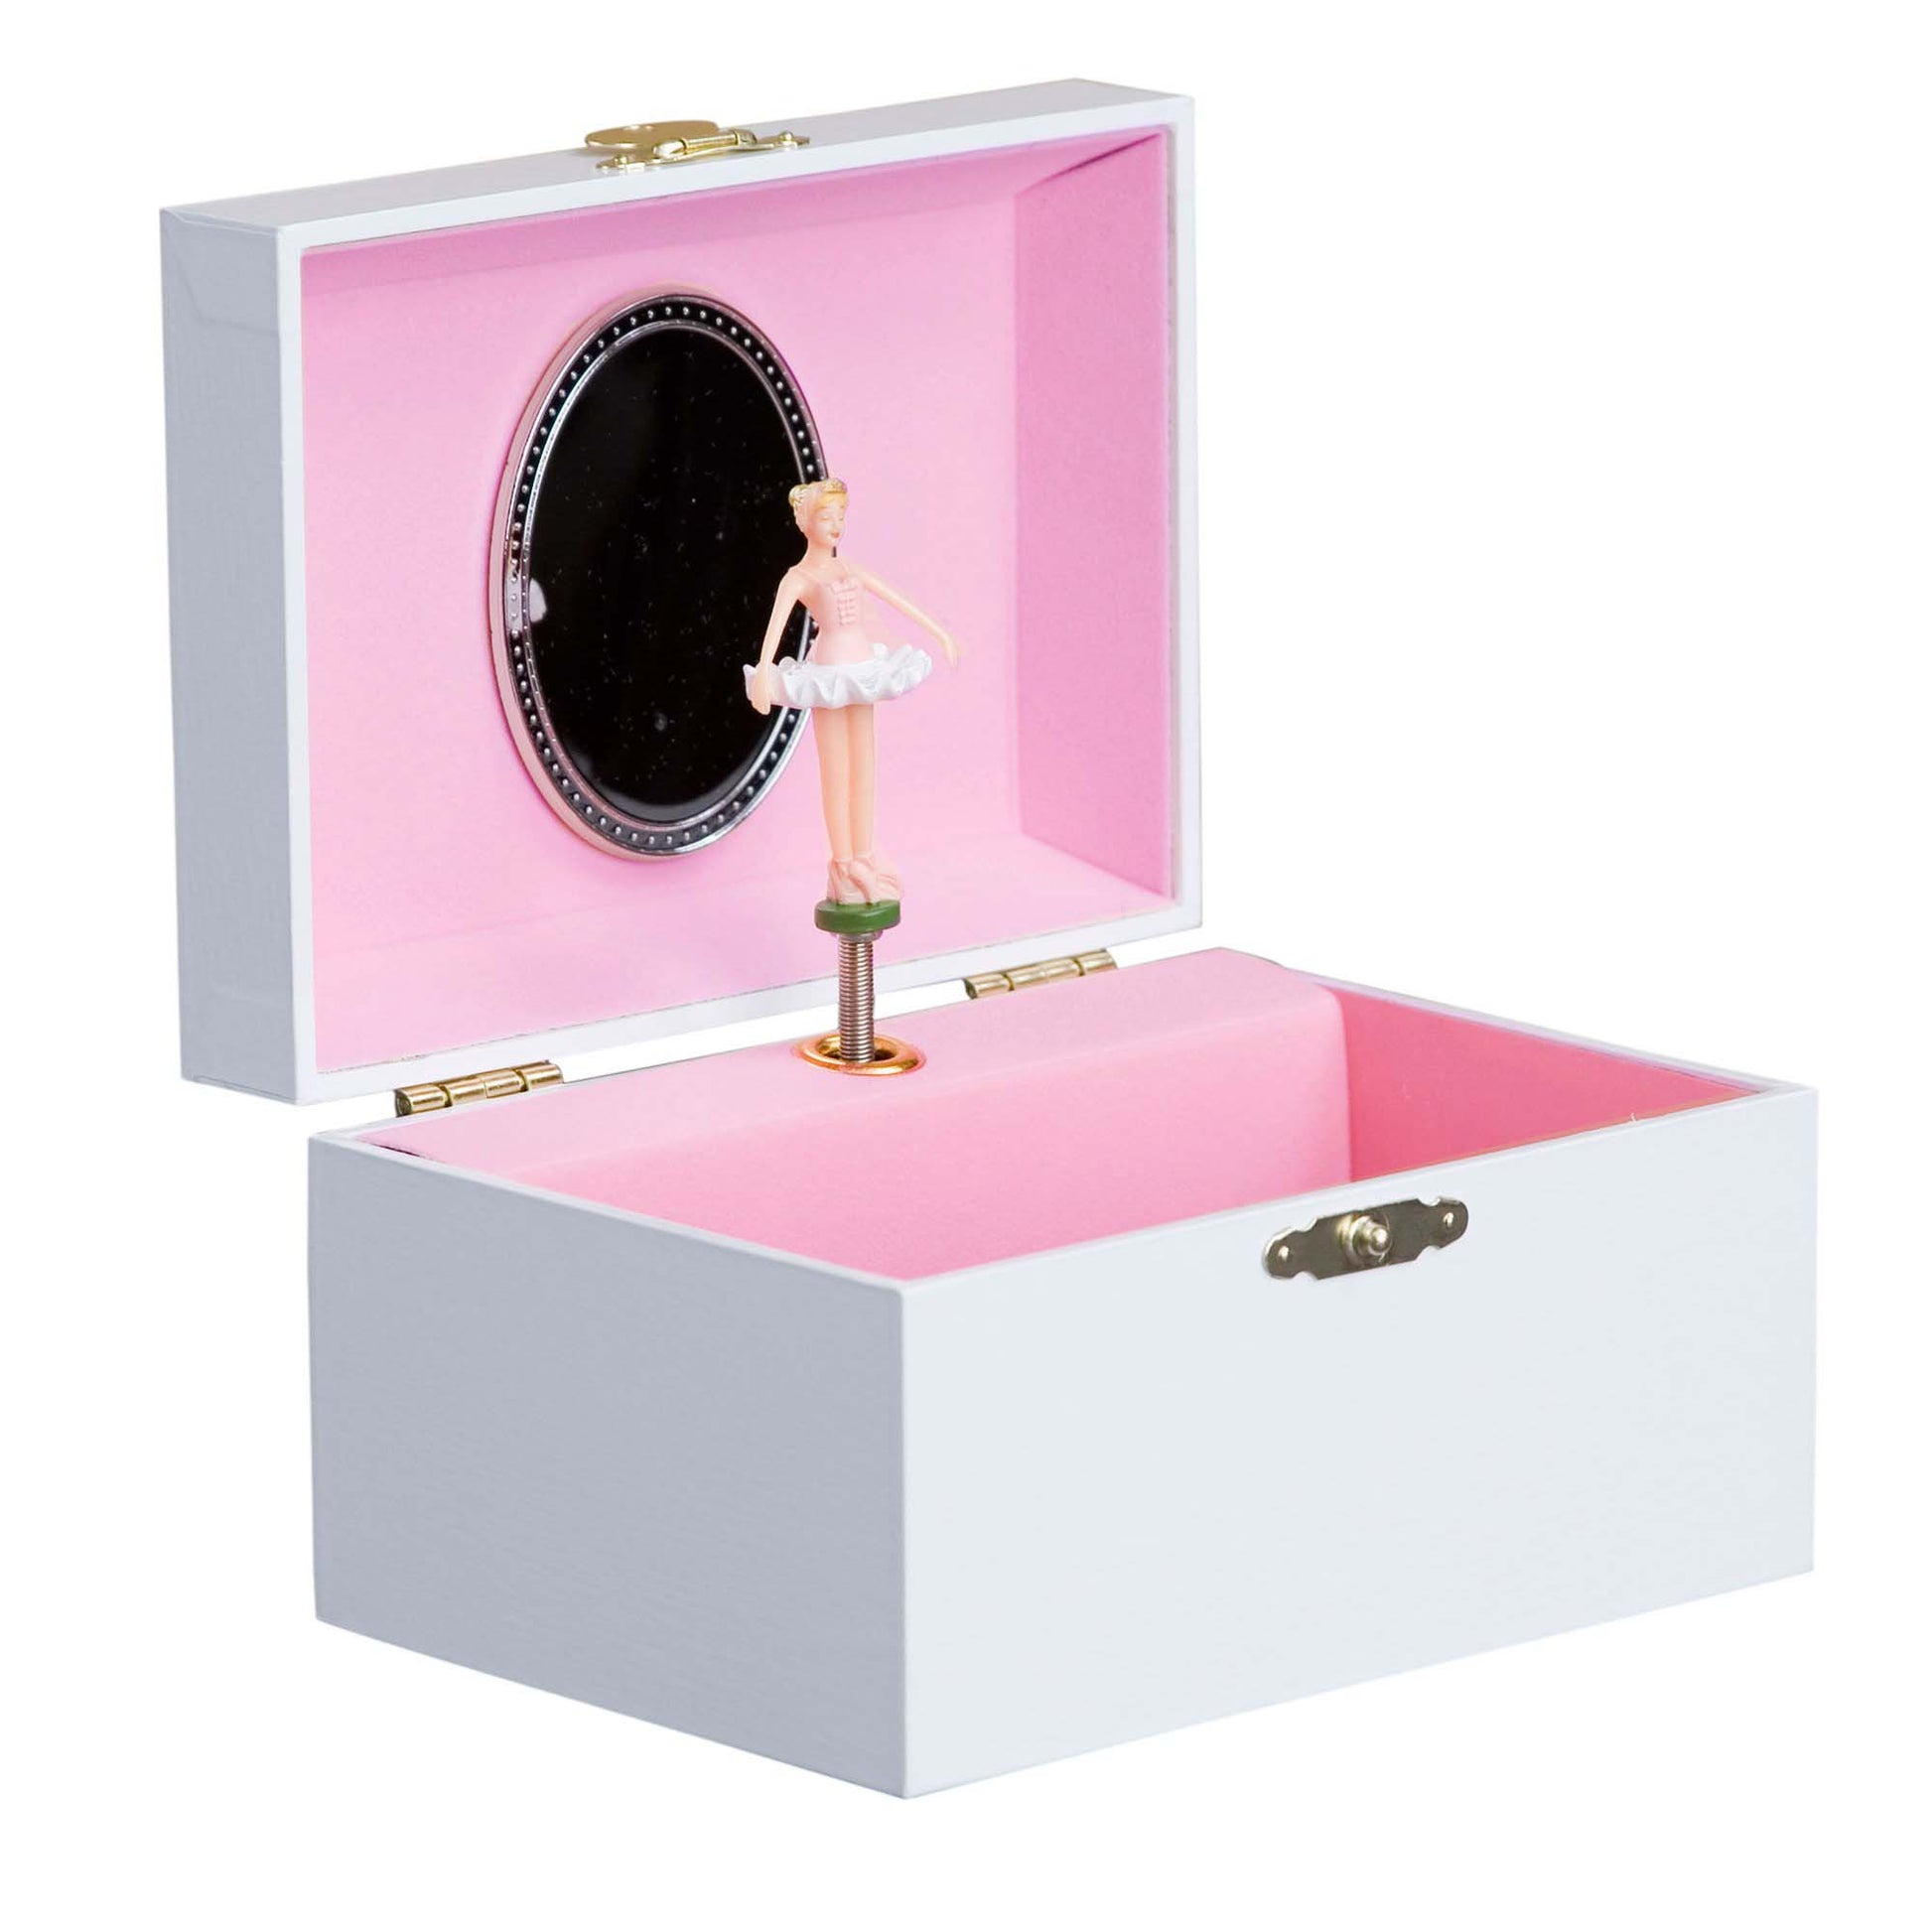 Girls musical ballerina jewelry box with name monogram